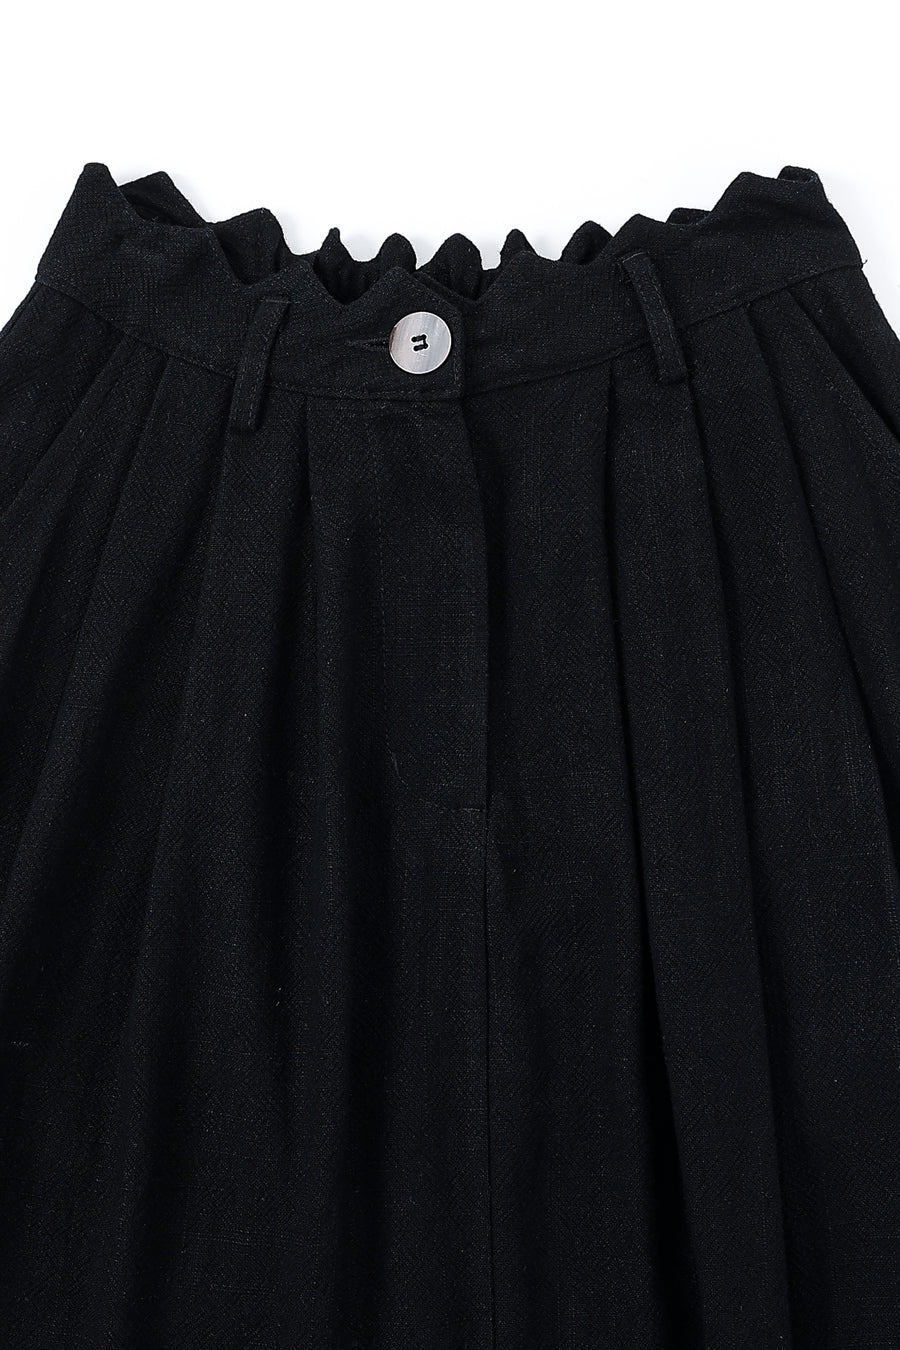 Lisa Linen Skirt Black